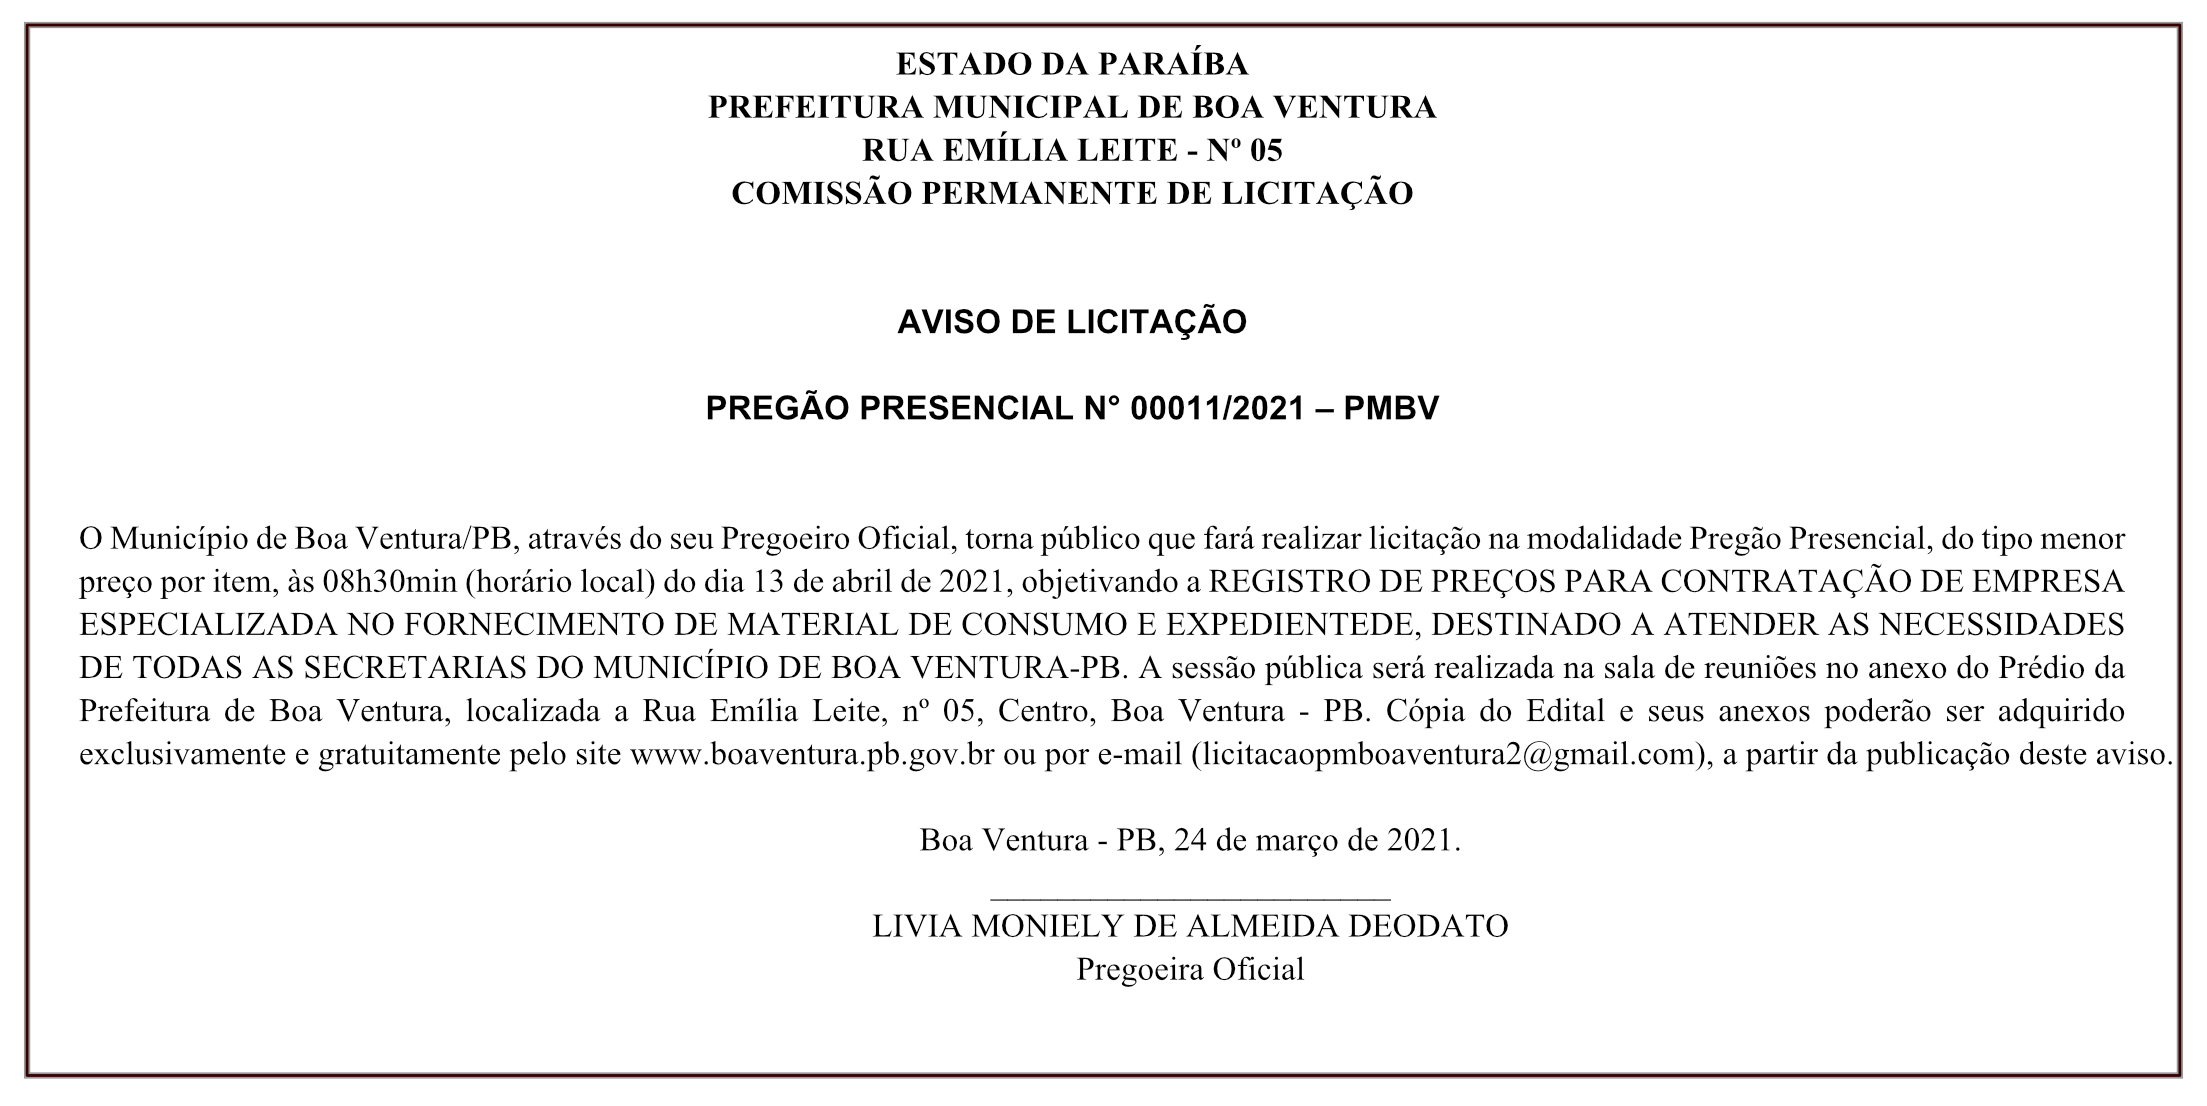 PREFEITURA MUNICIPAL DE BOA VENTURA – AVISO DE LICITAÇÃO – PREGÃO PRESENCIAL N° 00011/2021 – PMBV